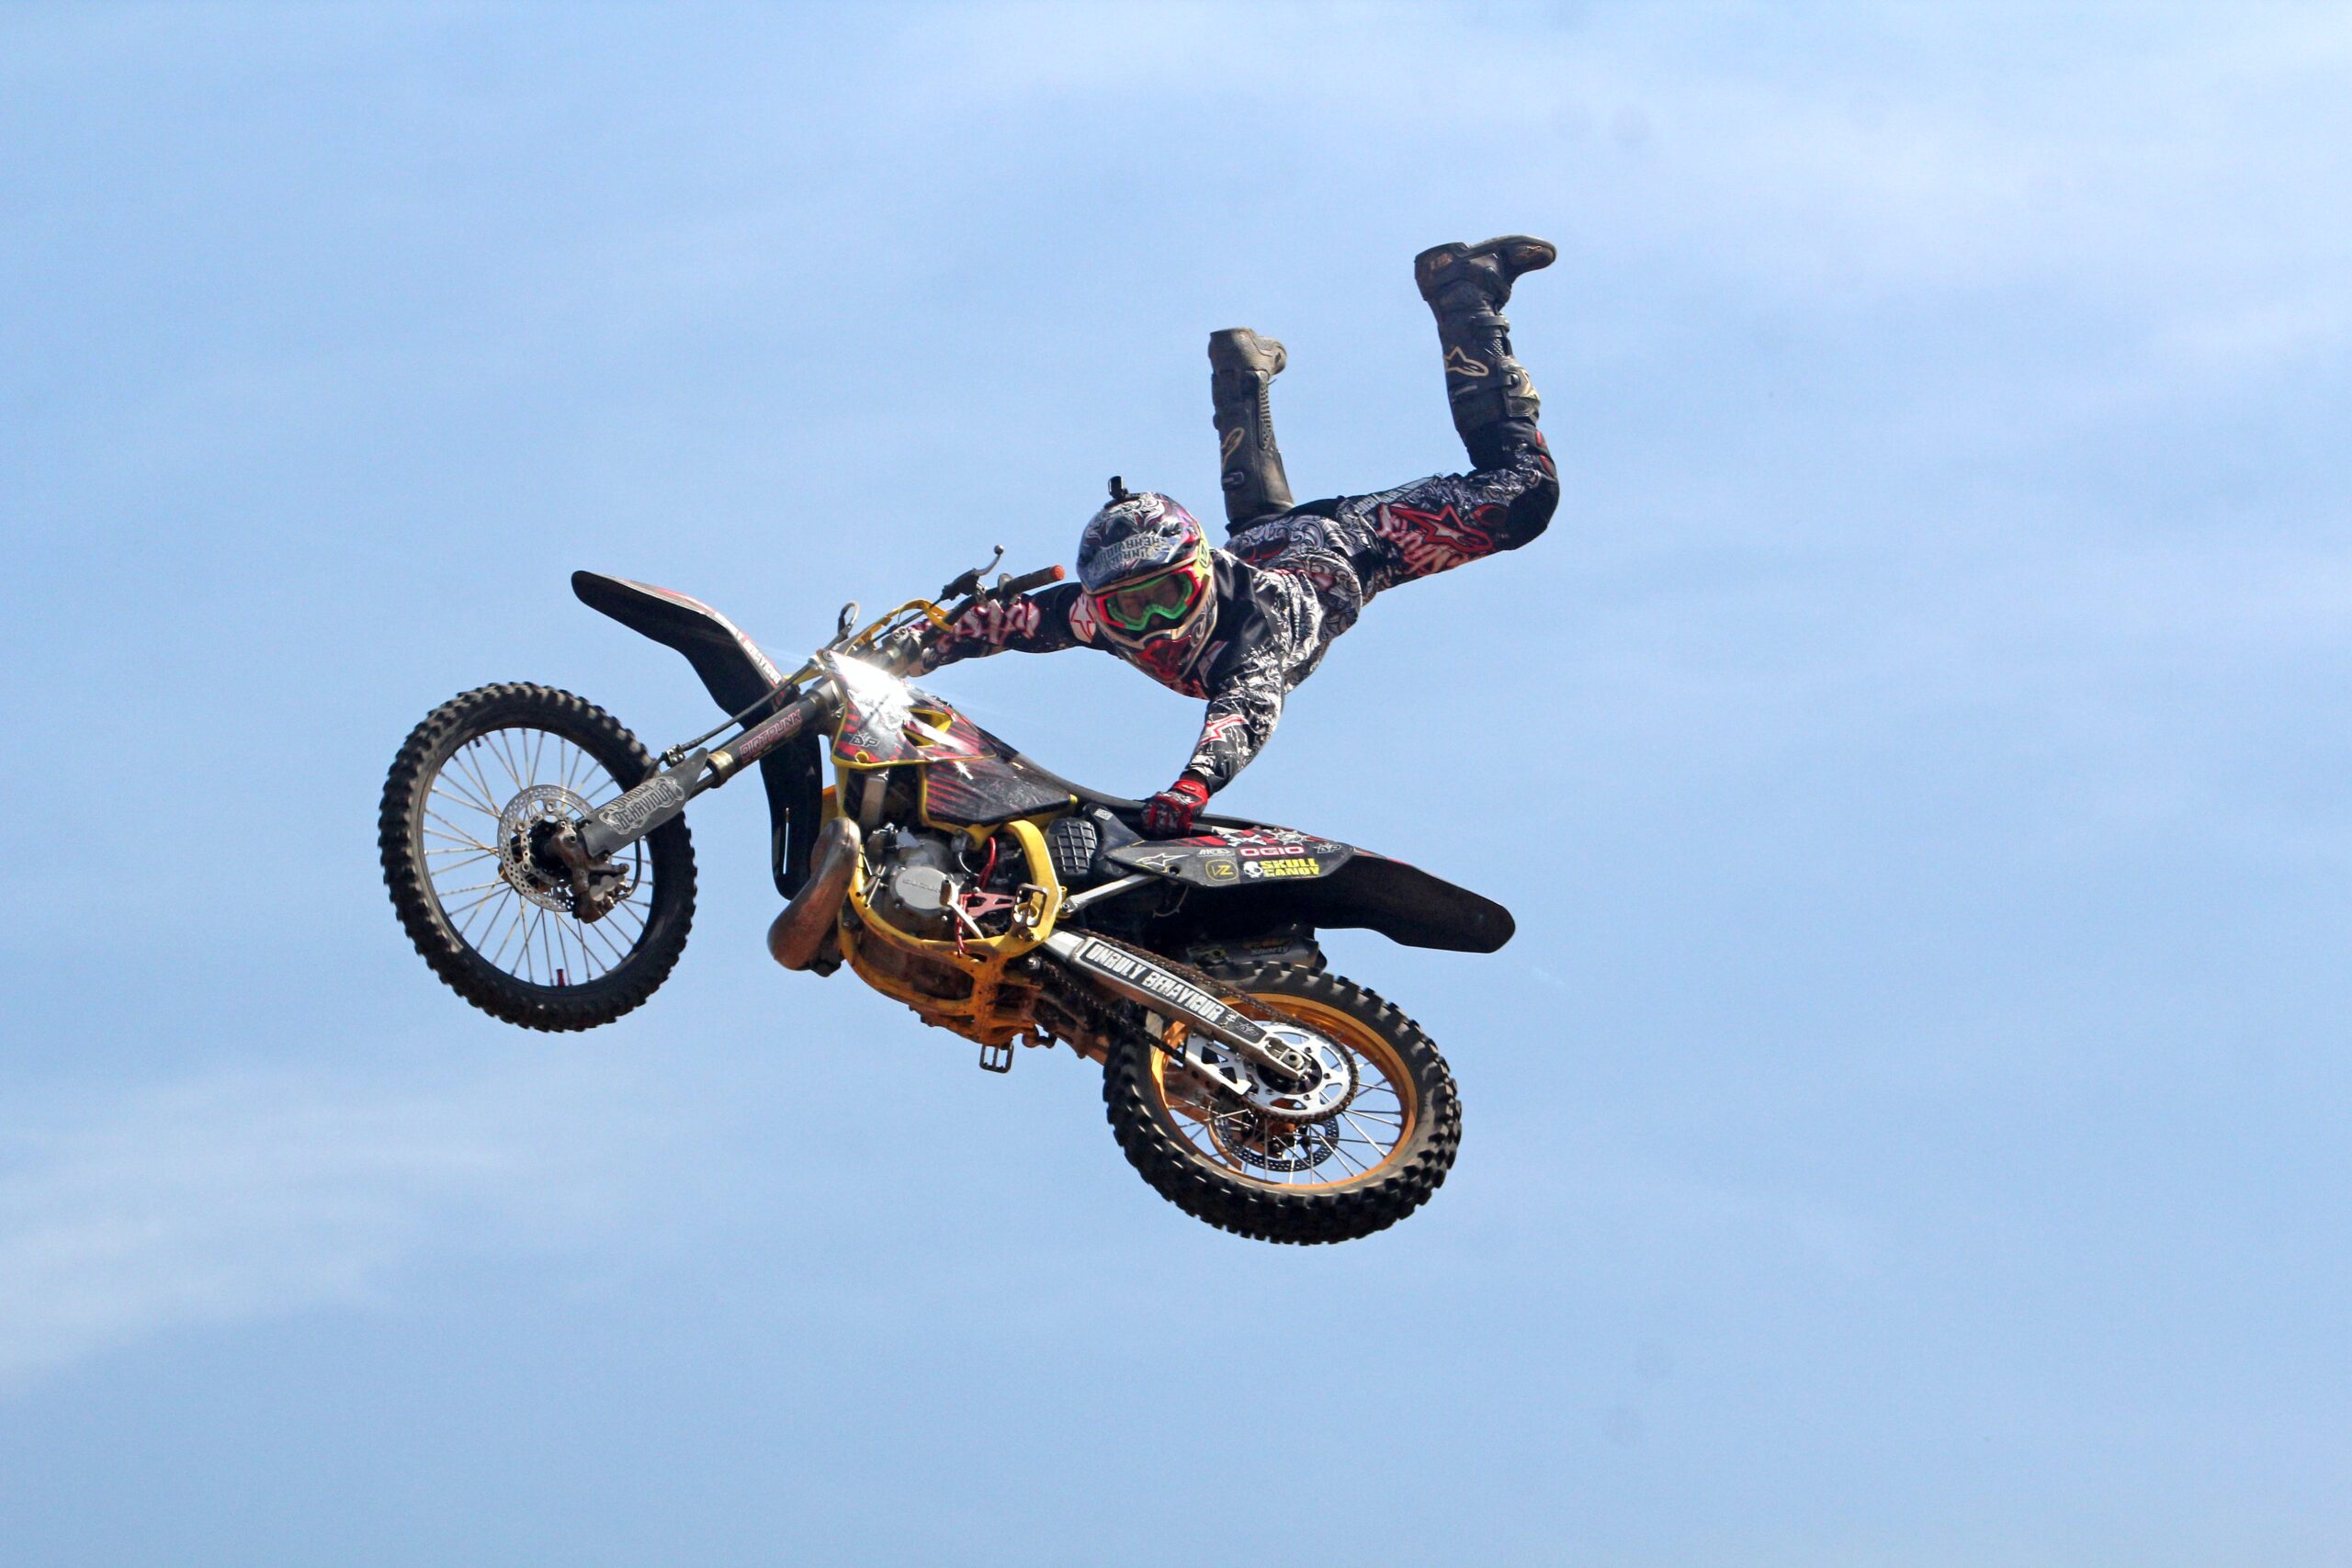 Motocross: Jak wybrać odpowiednią oponę i maksymalnie poprawić przyczepność motocykla?